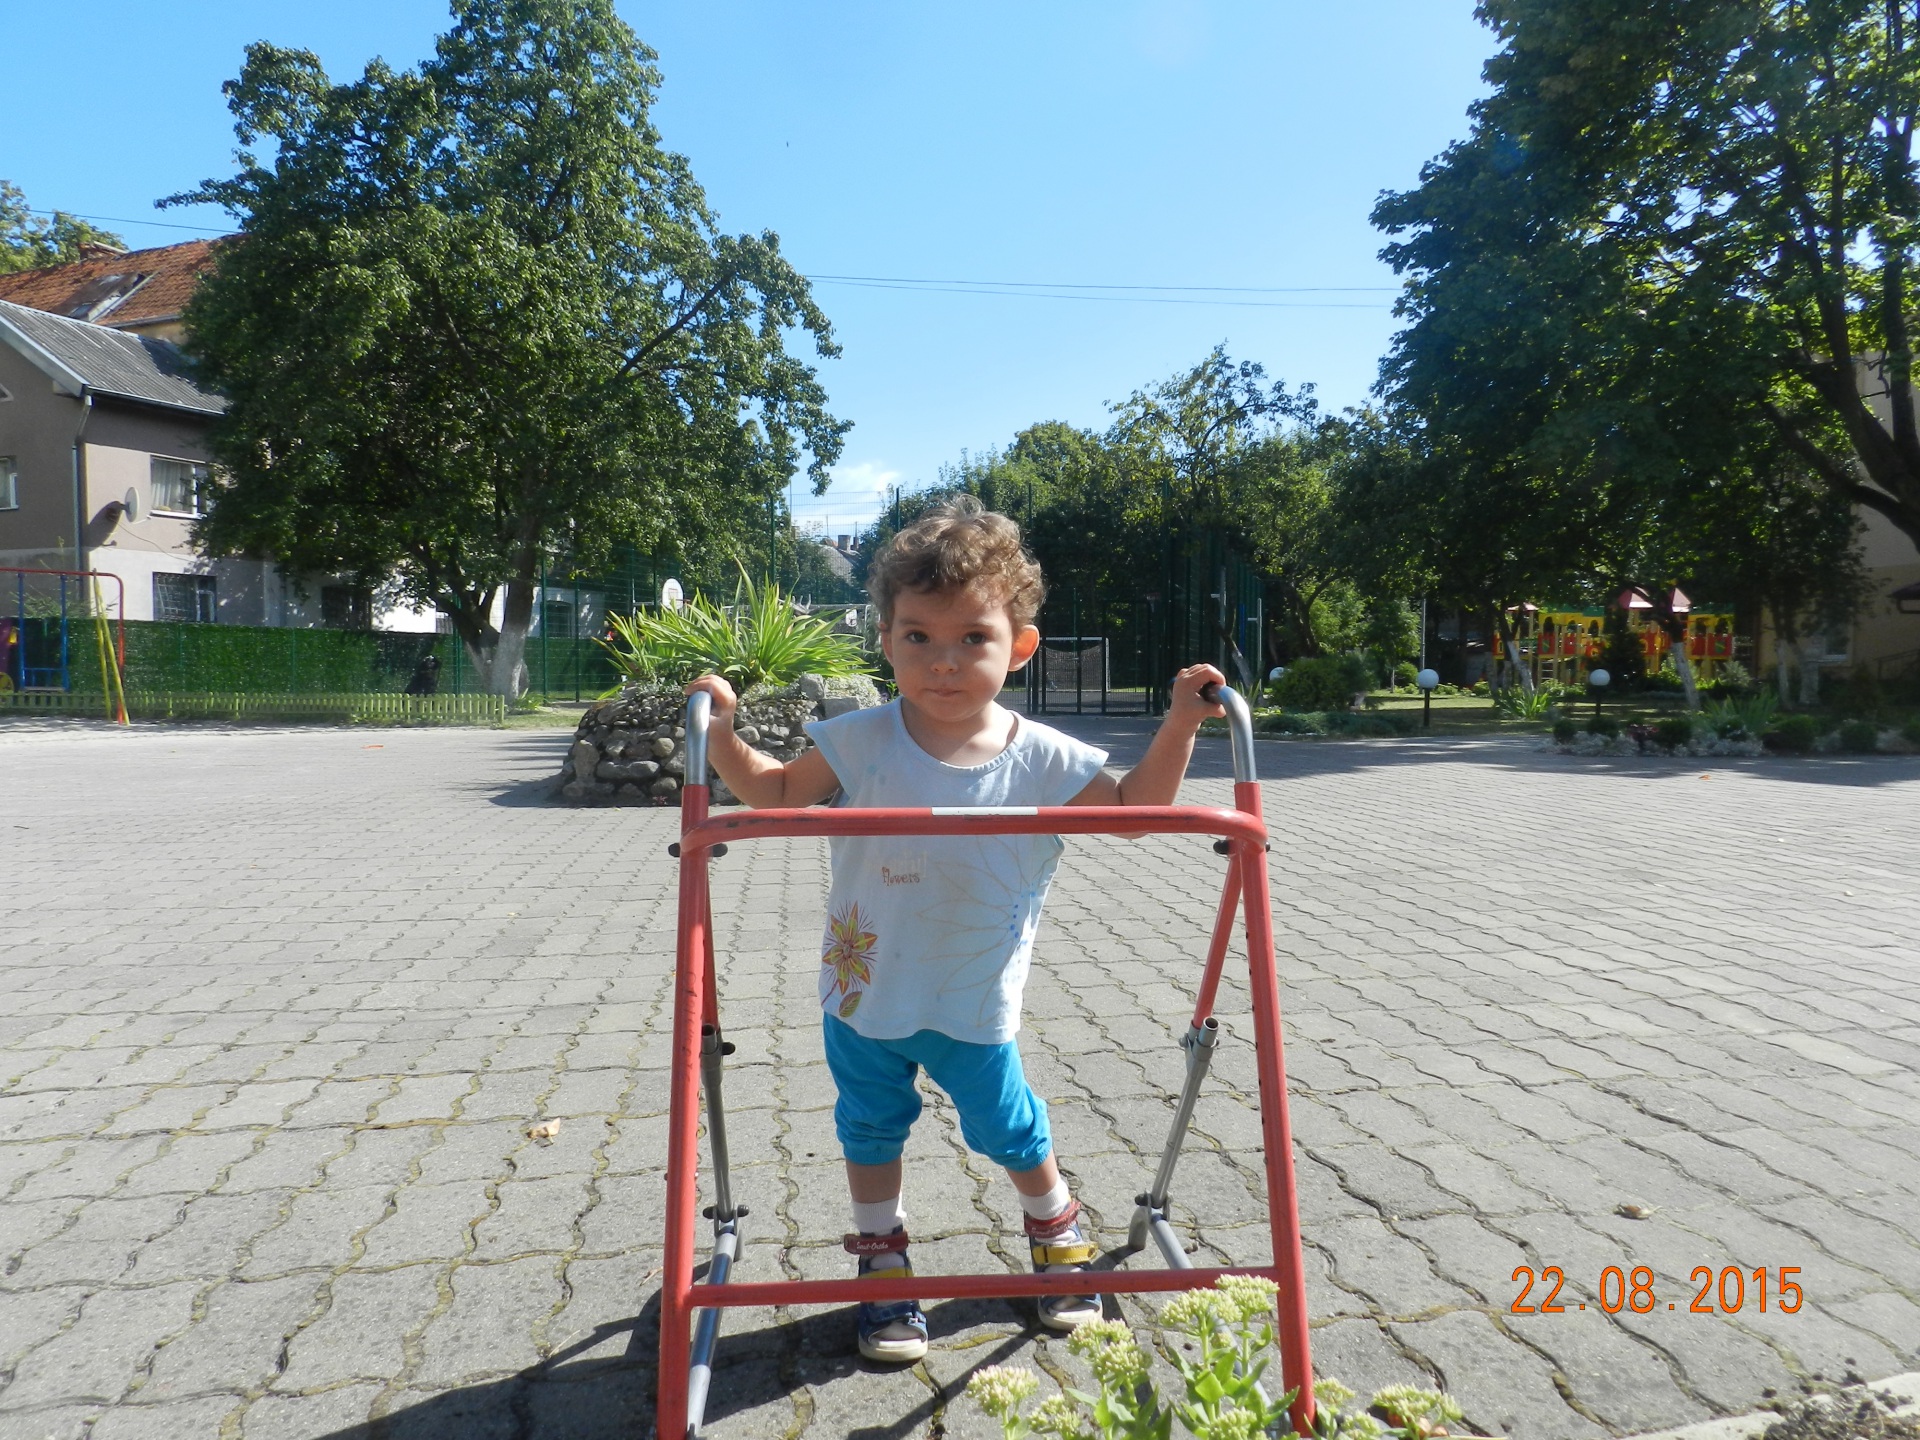  Трехлетней Насте Гелета из Сыктывкара срочно требуется помощь благотворителей Коми